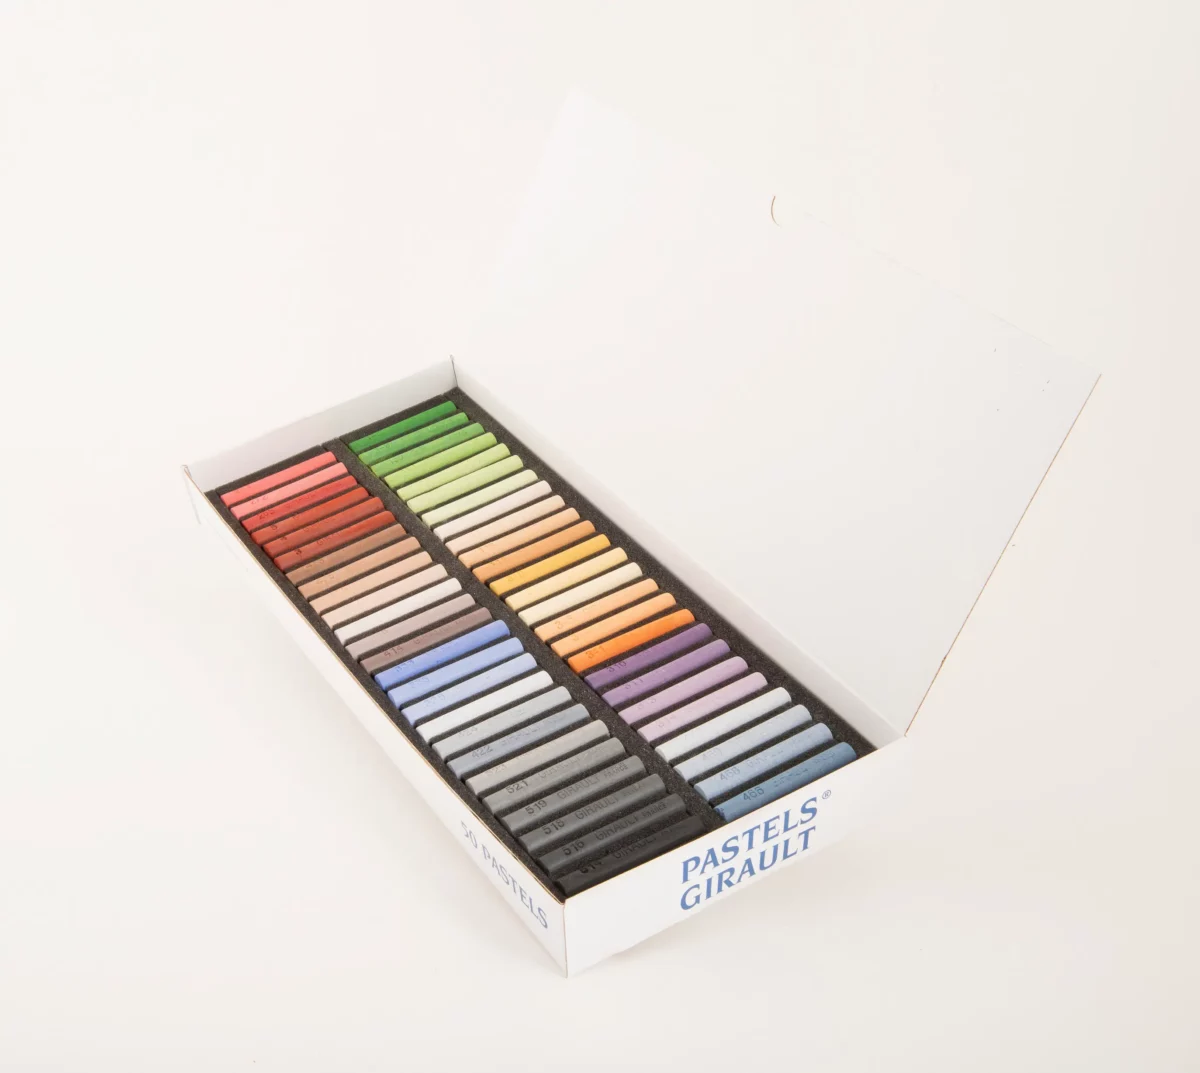 50 couleurs composant l'Harmonie complément 2 présentées en étui cartonné